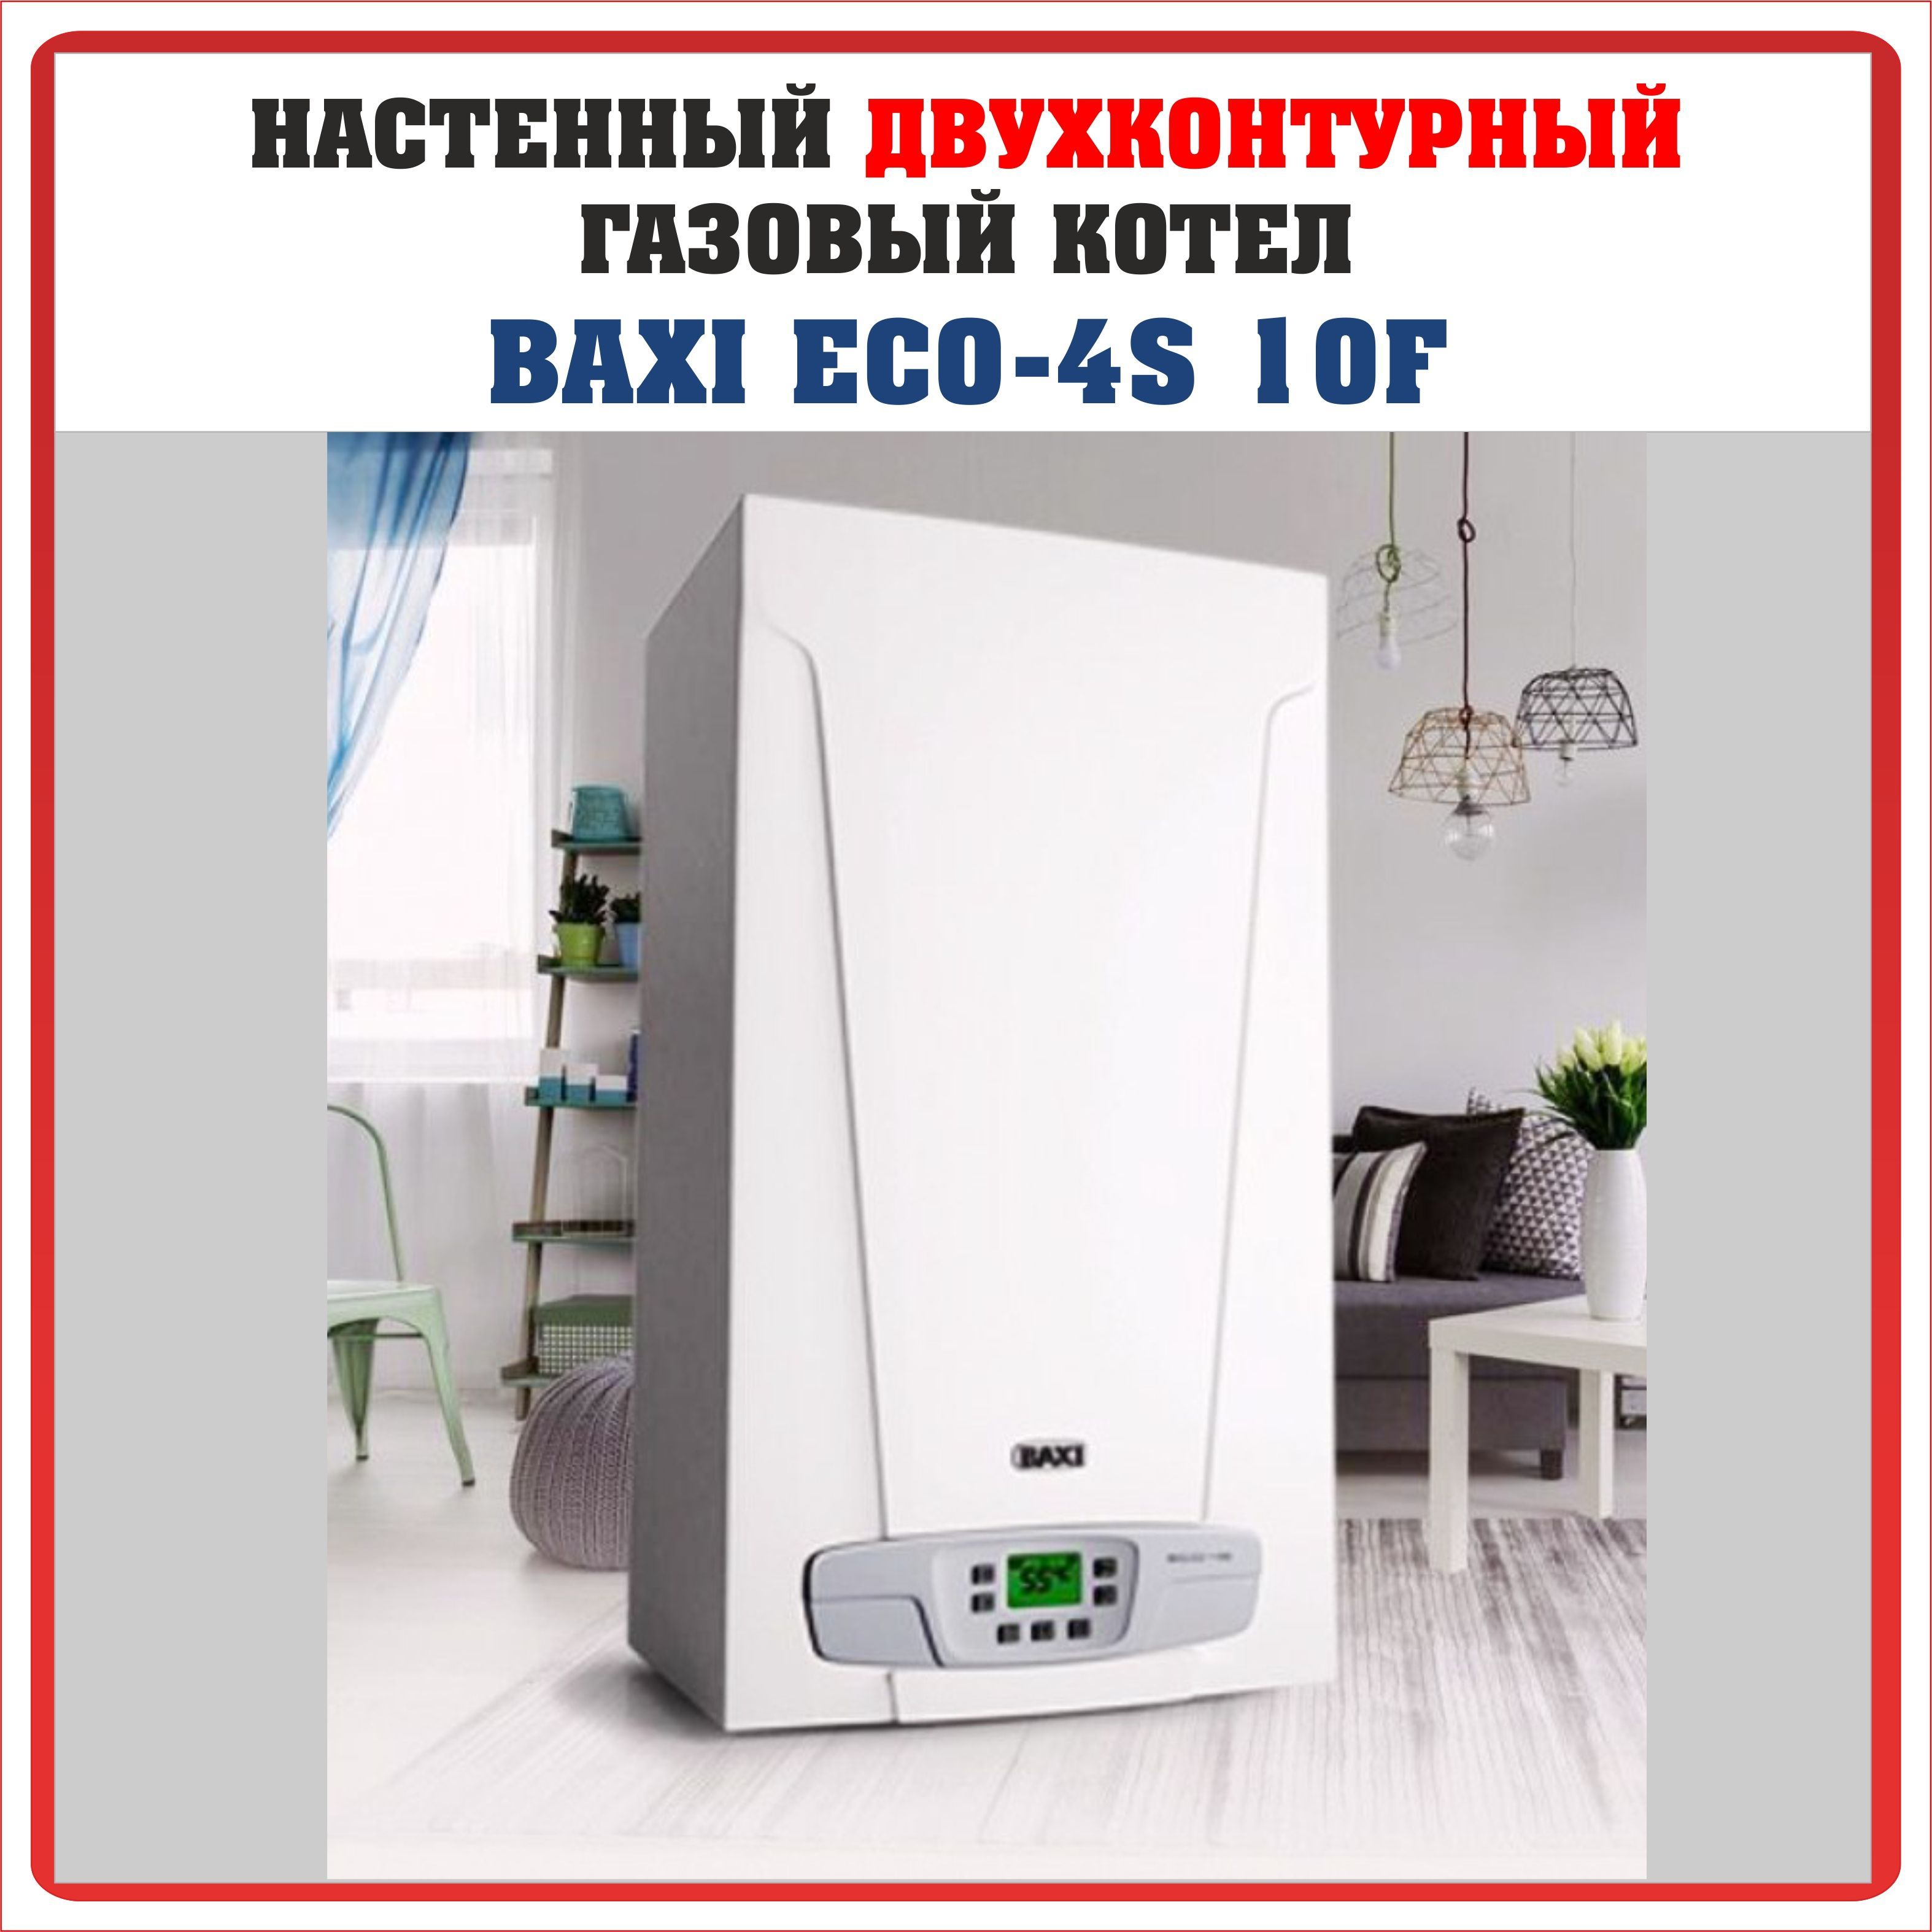 Газовый котел е 10 бакси. Газовый настенный котел Baxi eco4s 24 f 7659670. Низкотемпературный двухконтурный агрегат до -75 градусов.